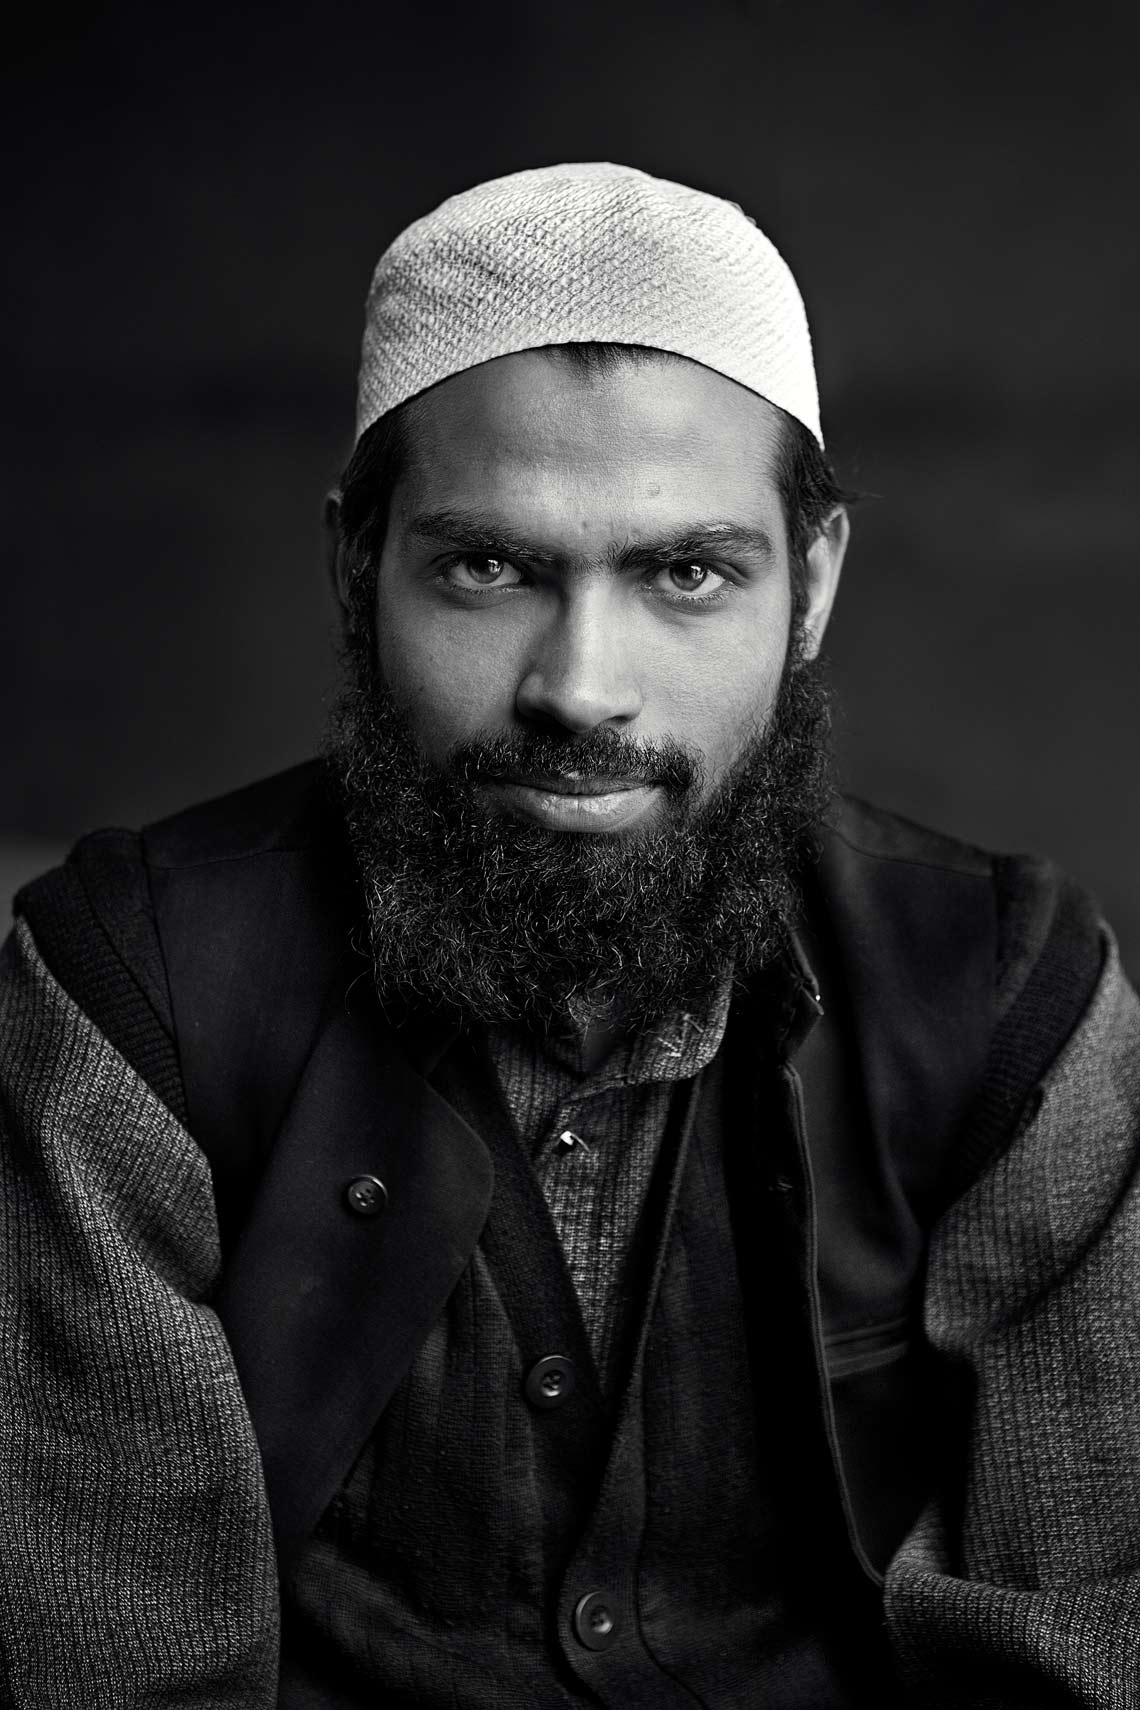 Sufiyan